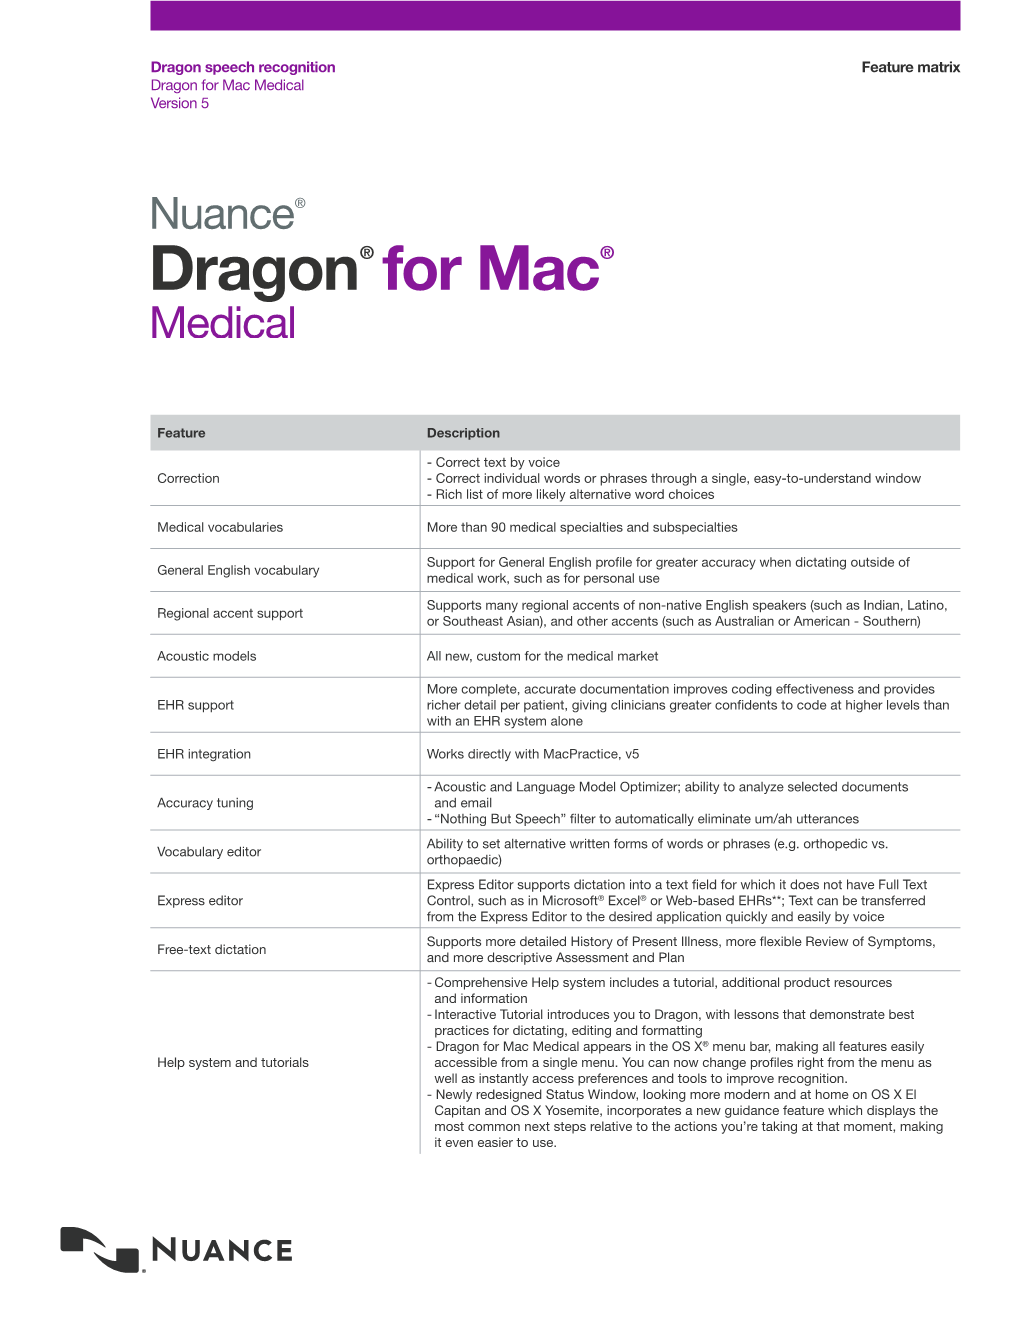 Dragon for Mac Medical Feature Matrix